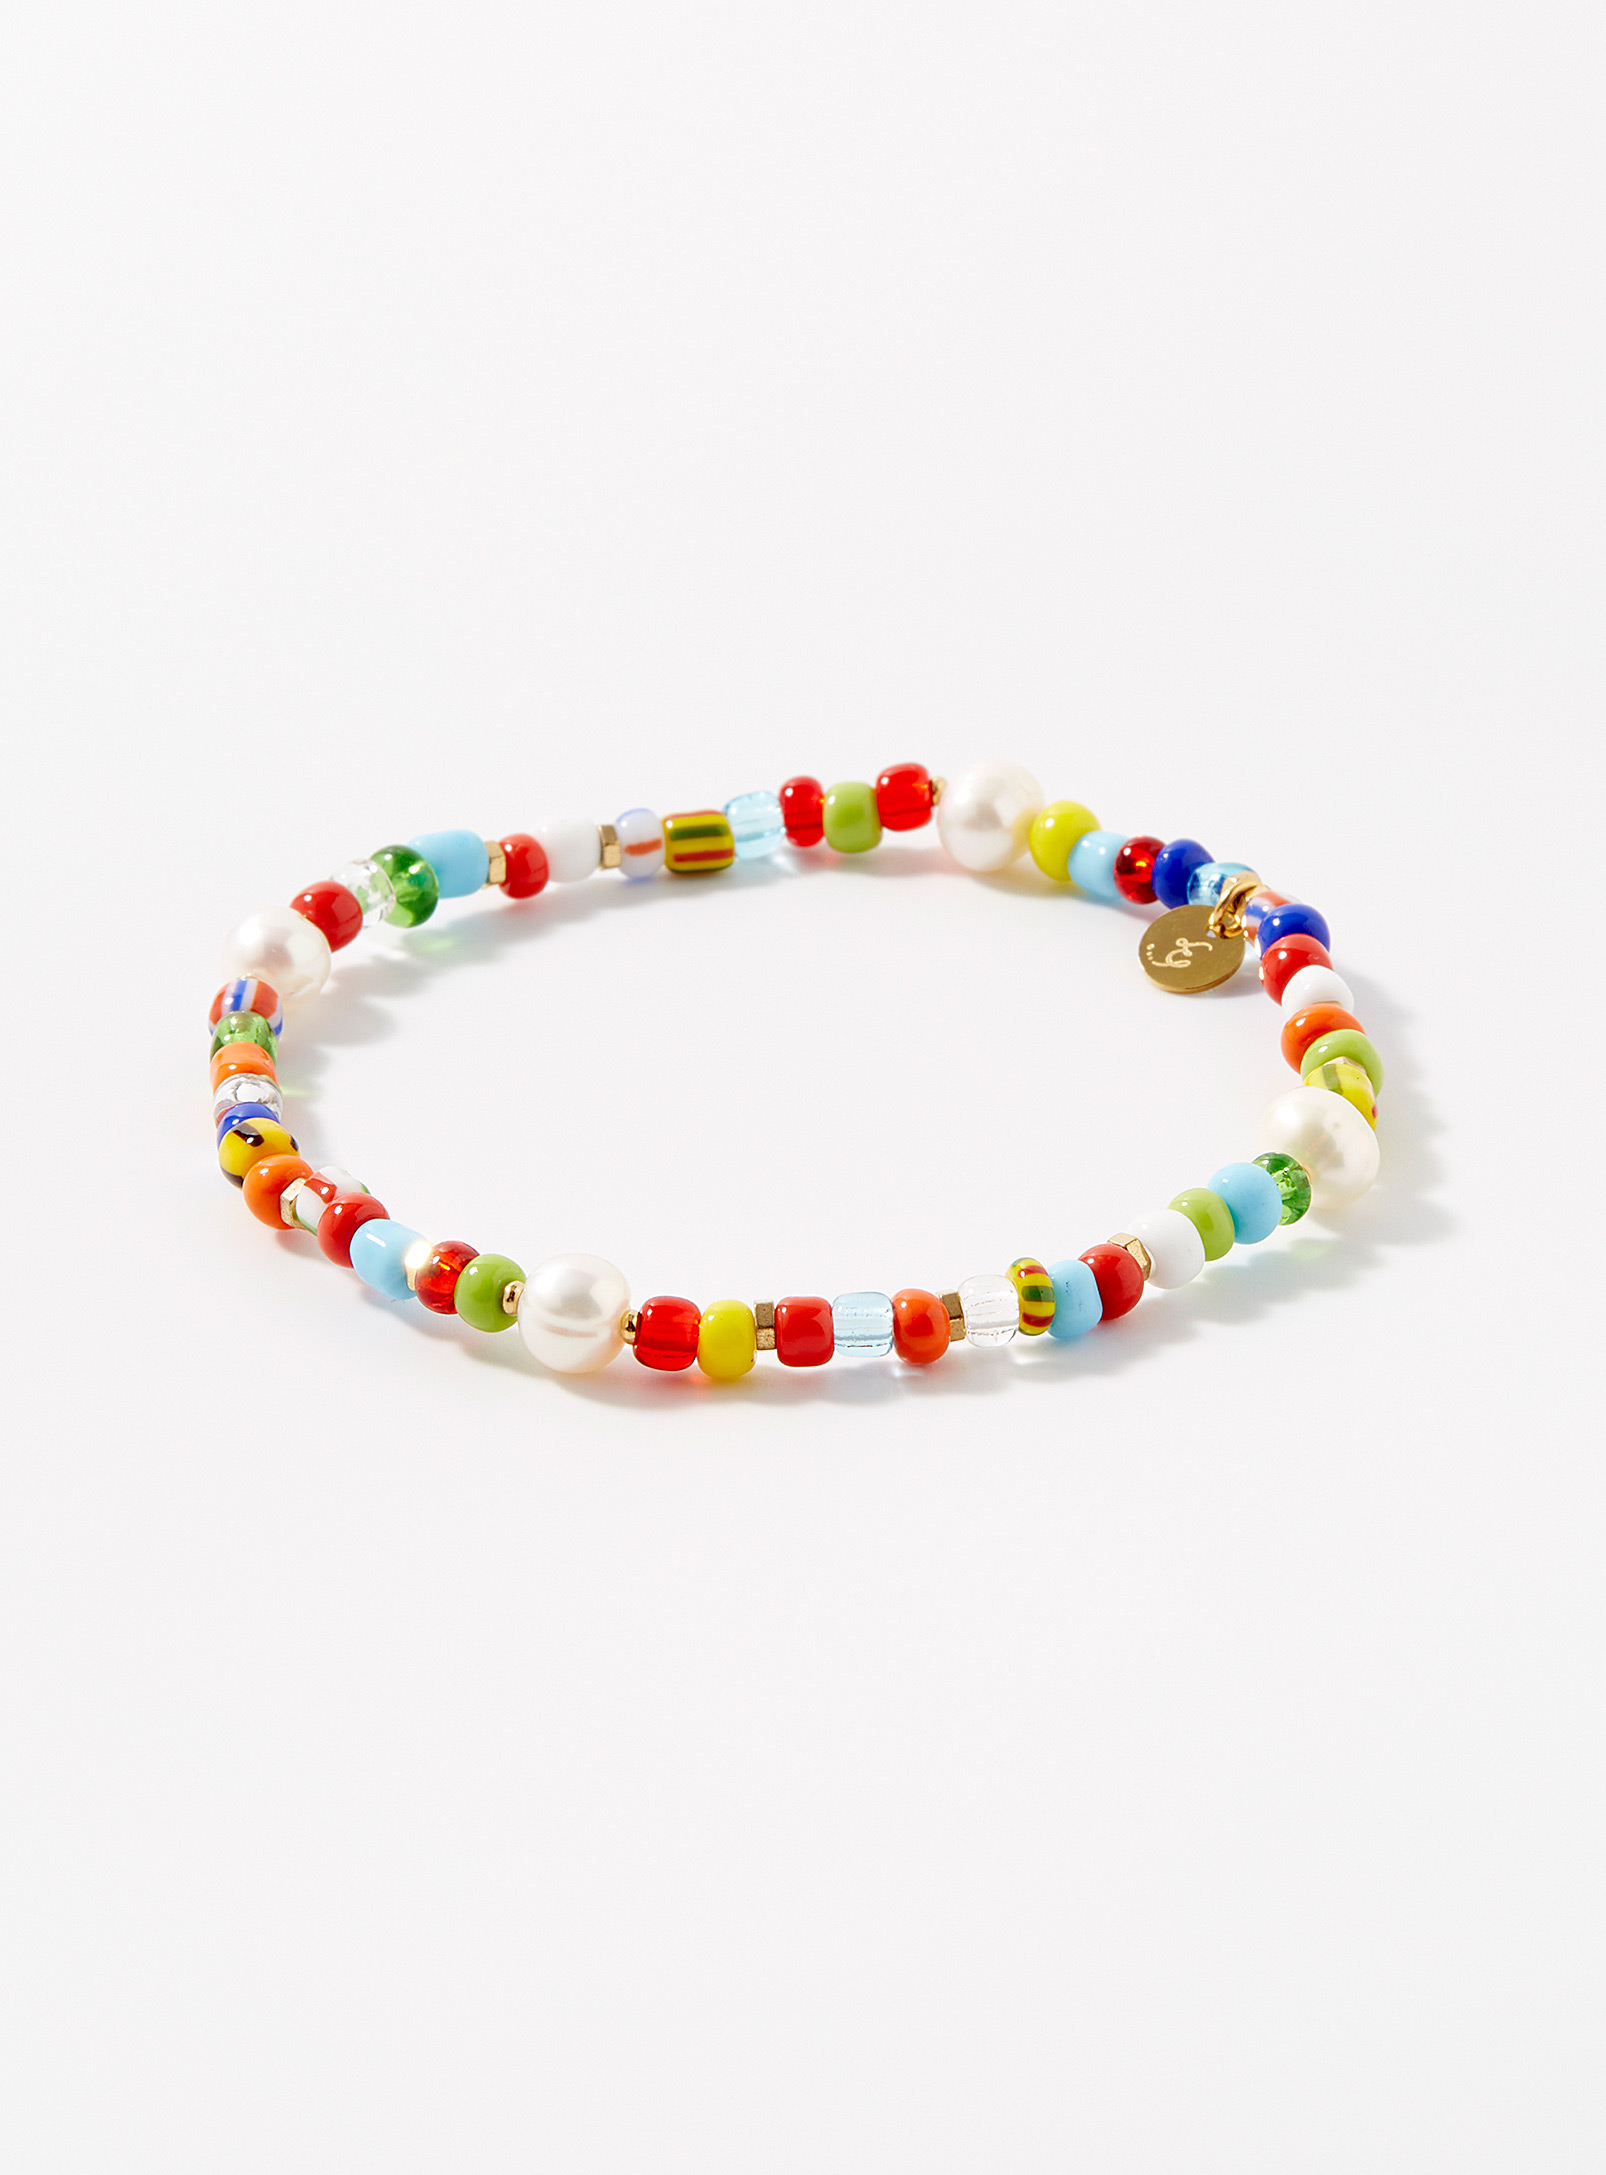 Le 31 - Le bracelet billes colorées Fantasia